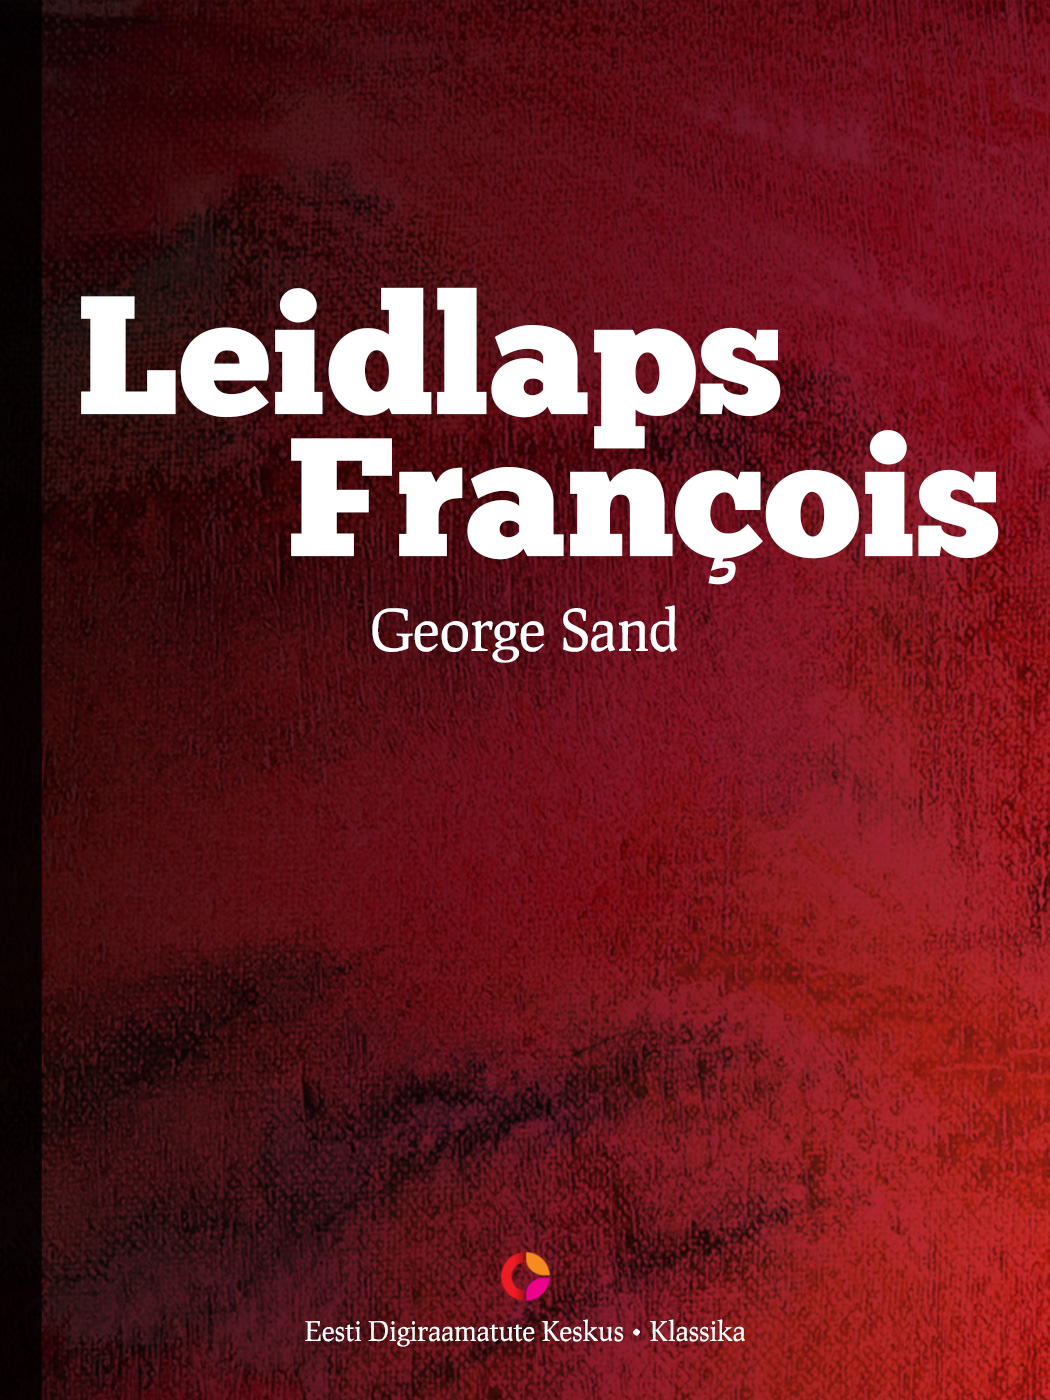 Книга Leidlaps Francois из серии , созданная George Sand, может относится к жанру Зарубежная старинная литература, Зарубежная классика. Стоимость электронной книги Leidlaps Francois с идентификатором 21184628 составляет 298.37 руб.